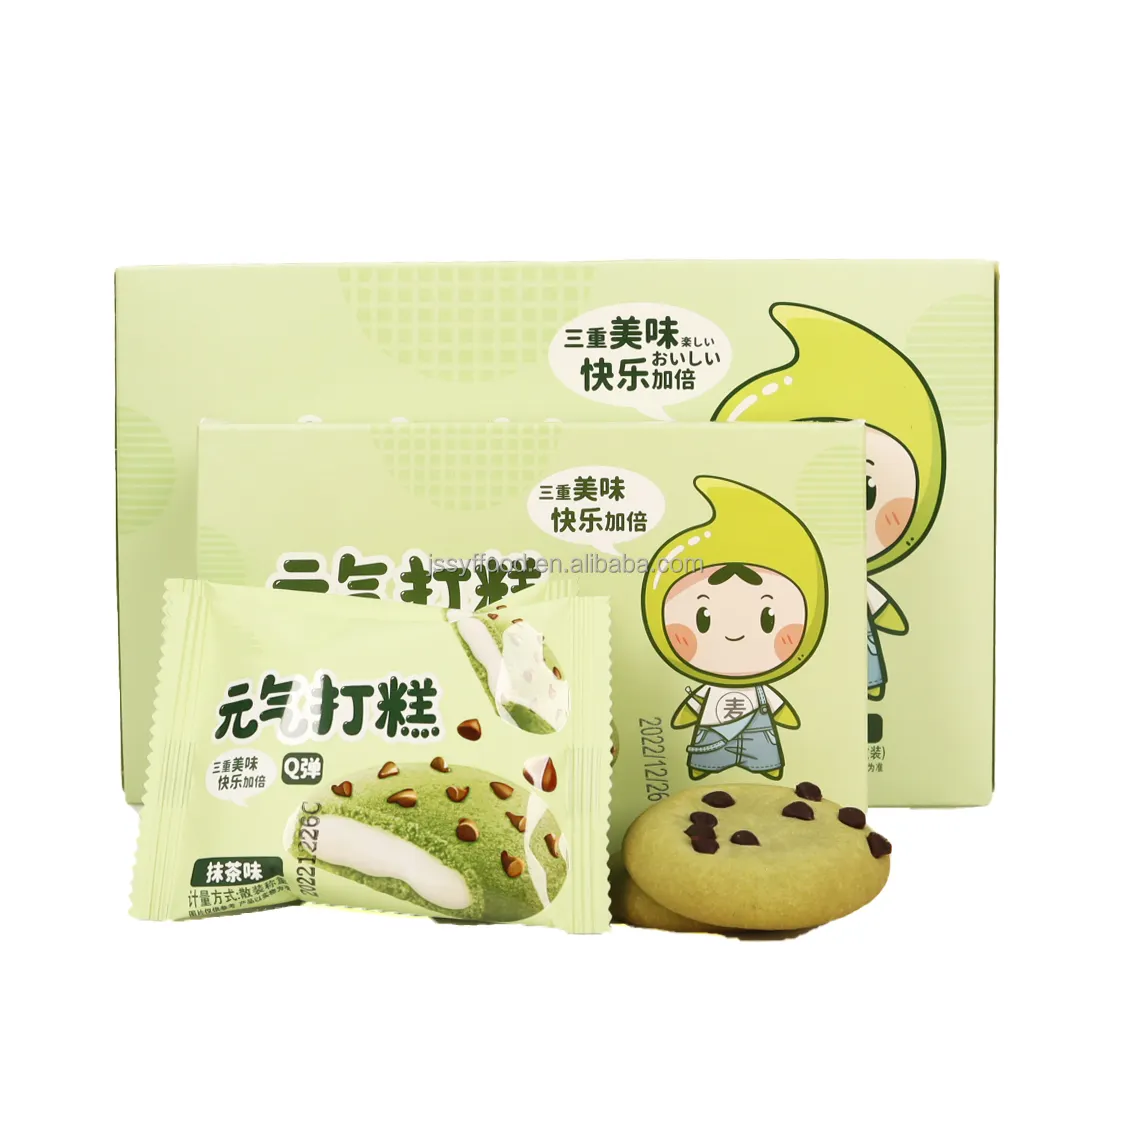 Popolare nuovo prodotto snack giapponese mochi Classic matcha flavor mochi Cookies